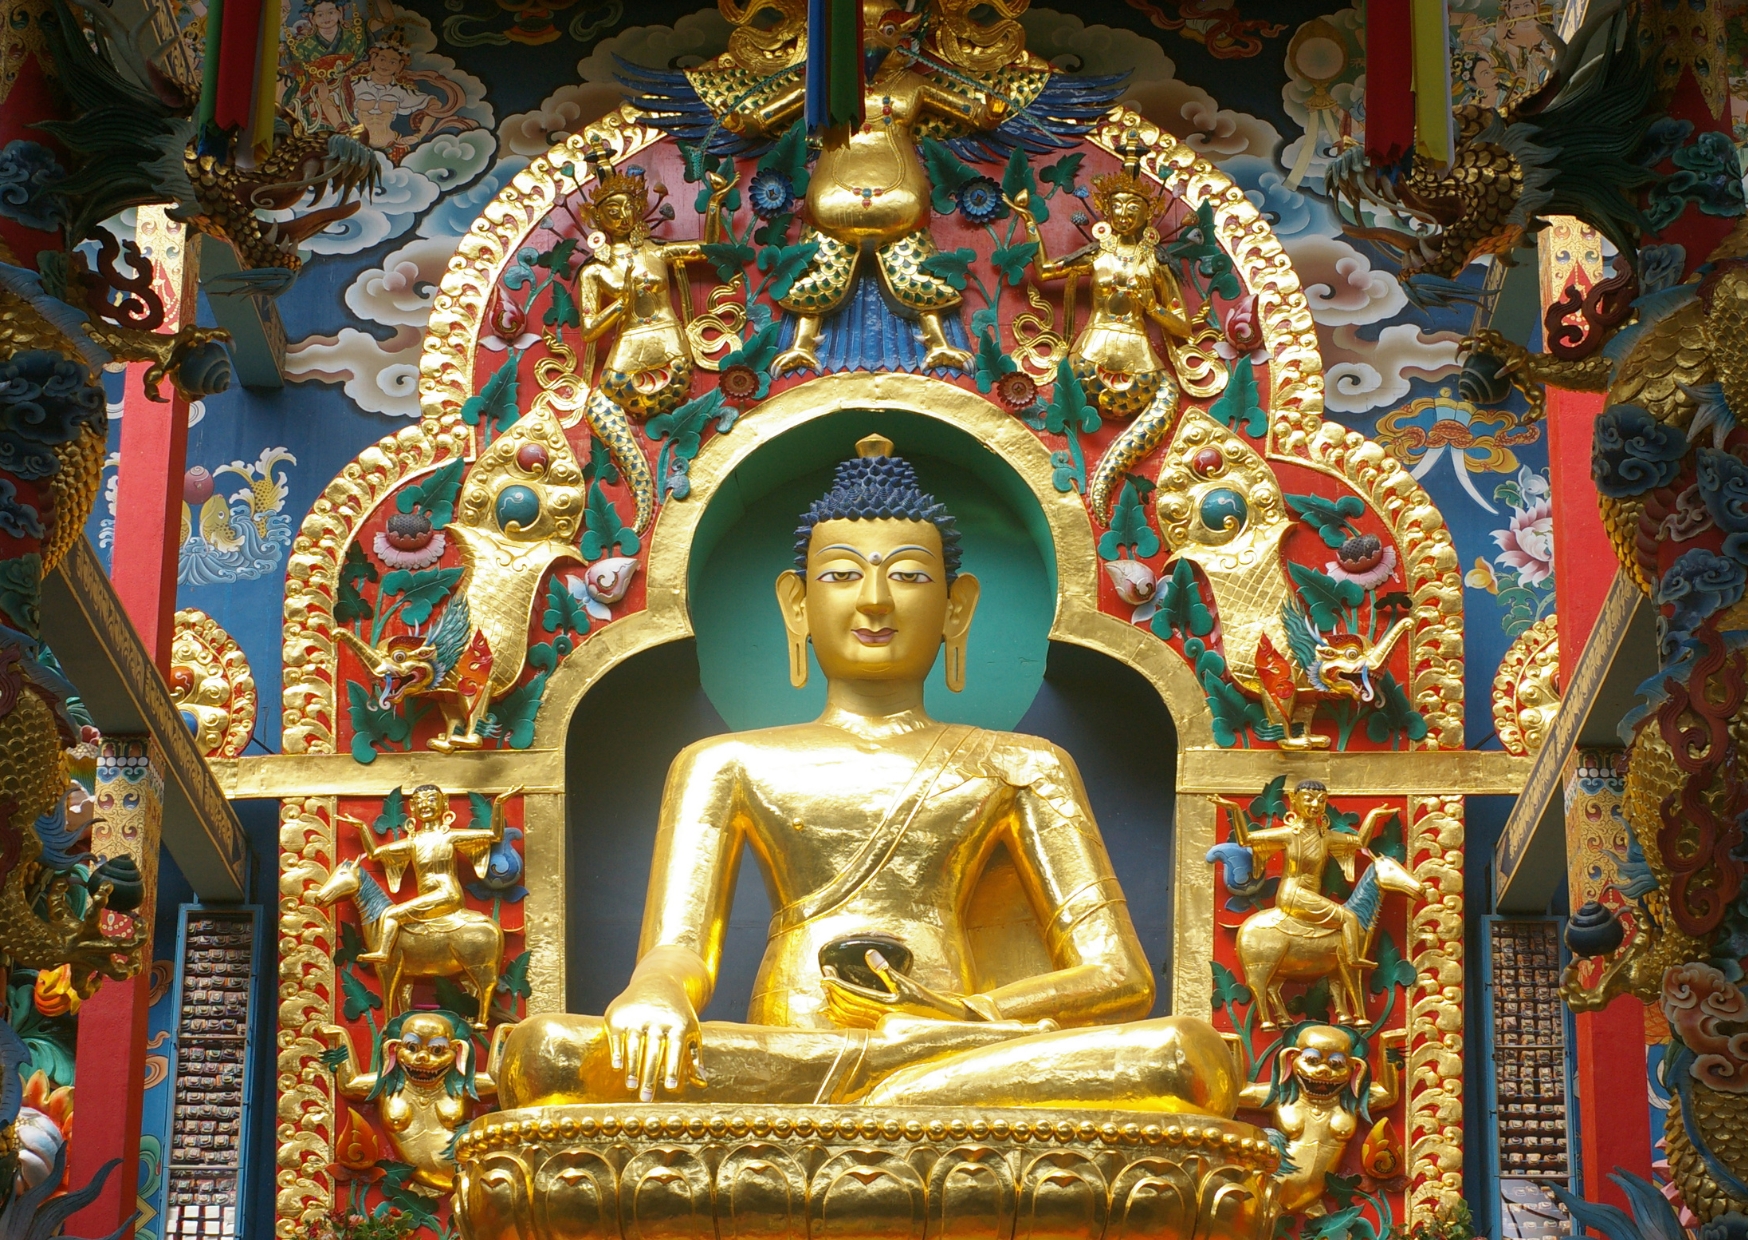 Hãy thực hành lòng nhân ái, lòng từ bi và lòng biết ơn của Đức Phật trong cuộc sống hàng ngày để mang lại hạnh phúc và an lạc cho mọi người xung quanh.